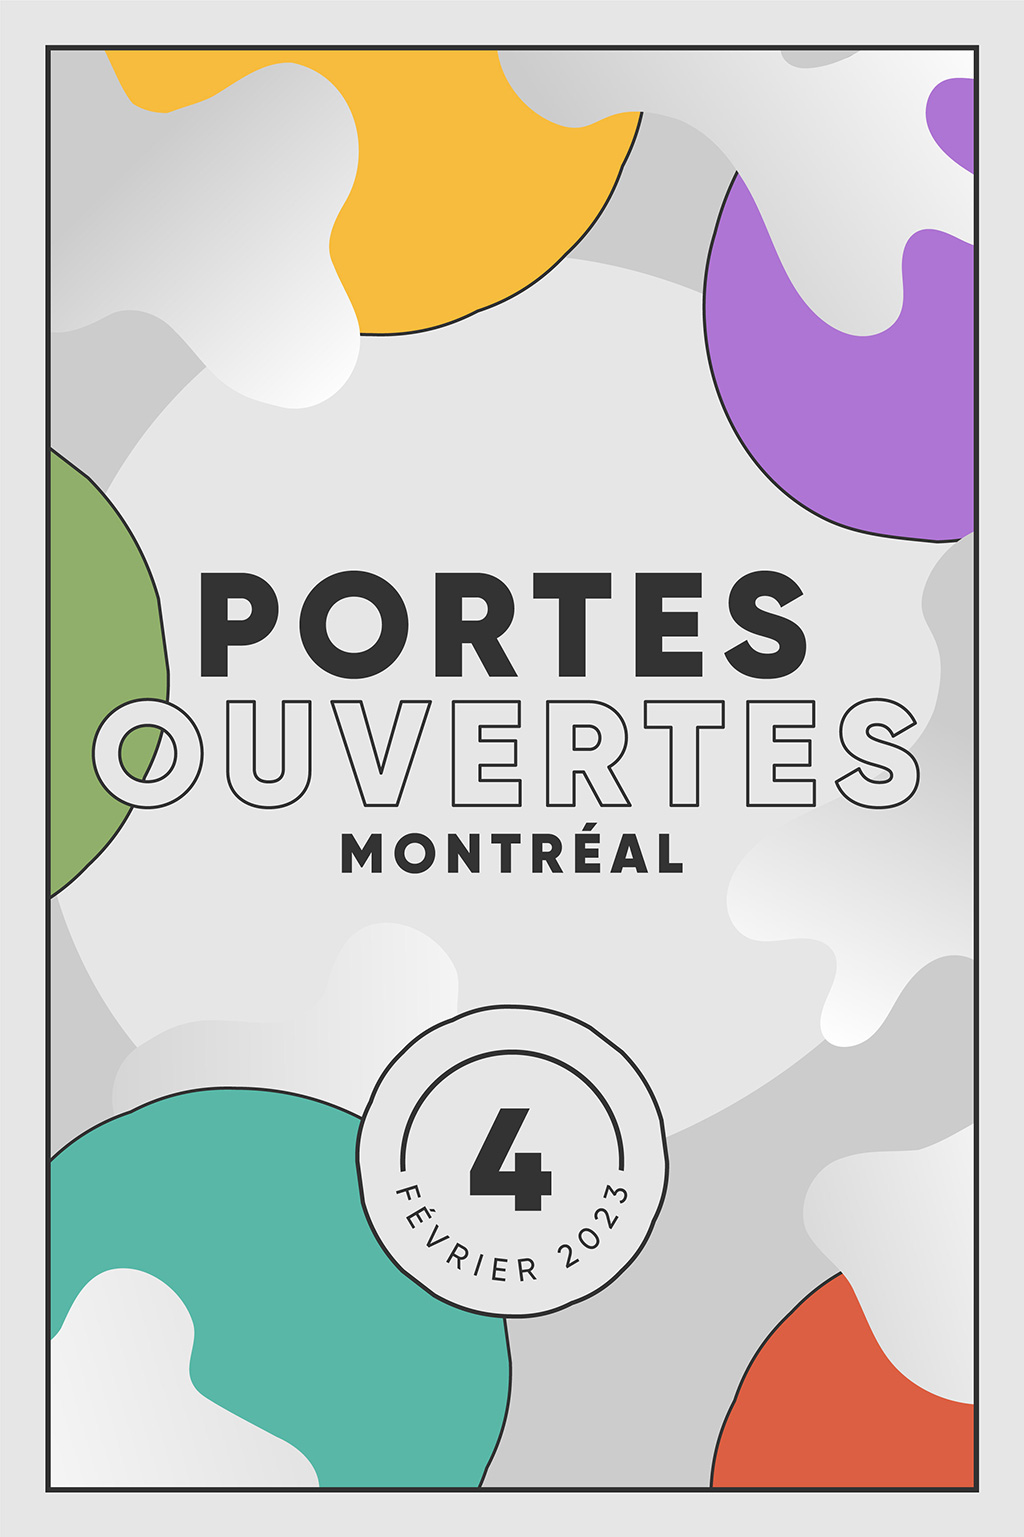 Portes ouvertes Montréal